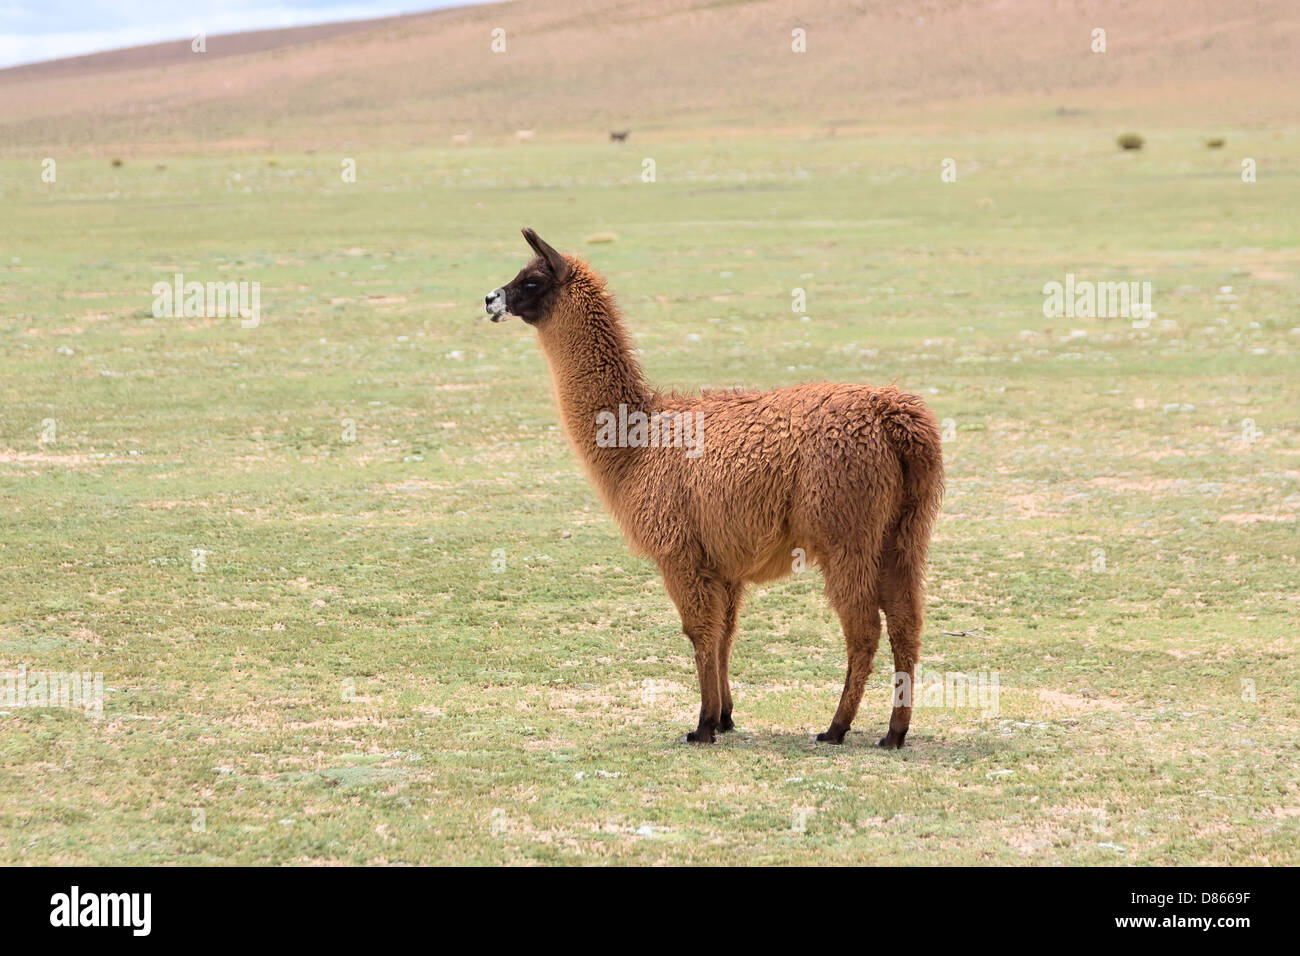 Vue latérale du llama dans un pré, Bolivie Banque D'Images